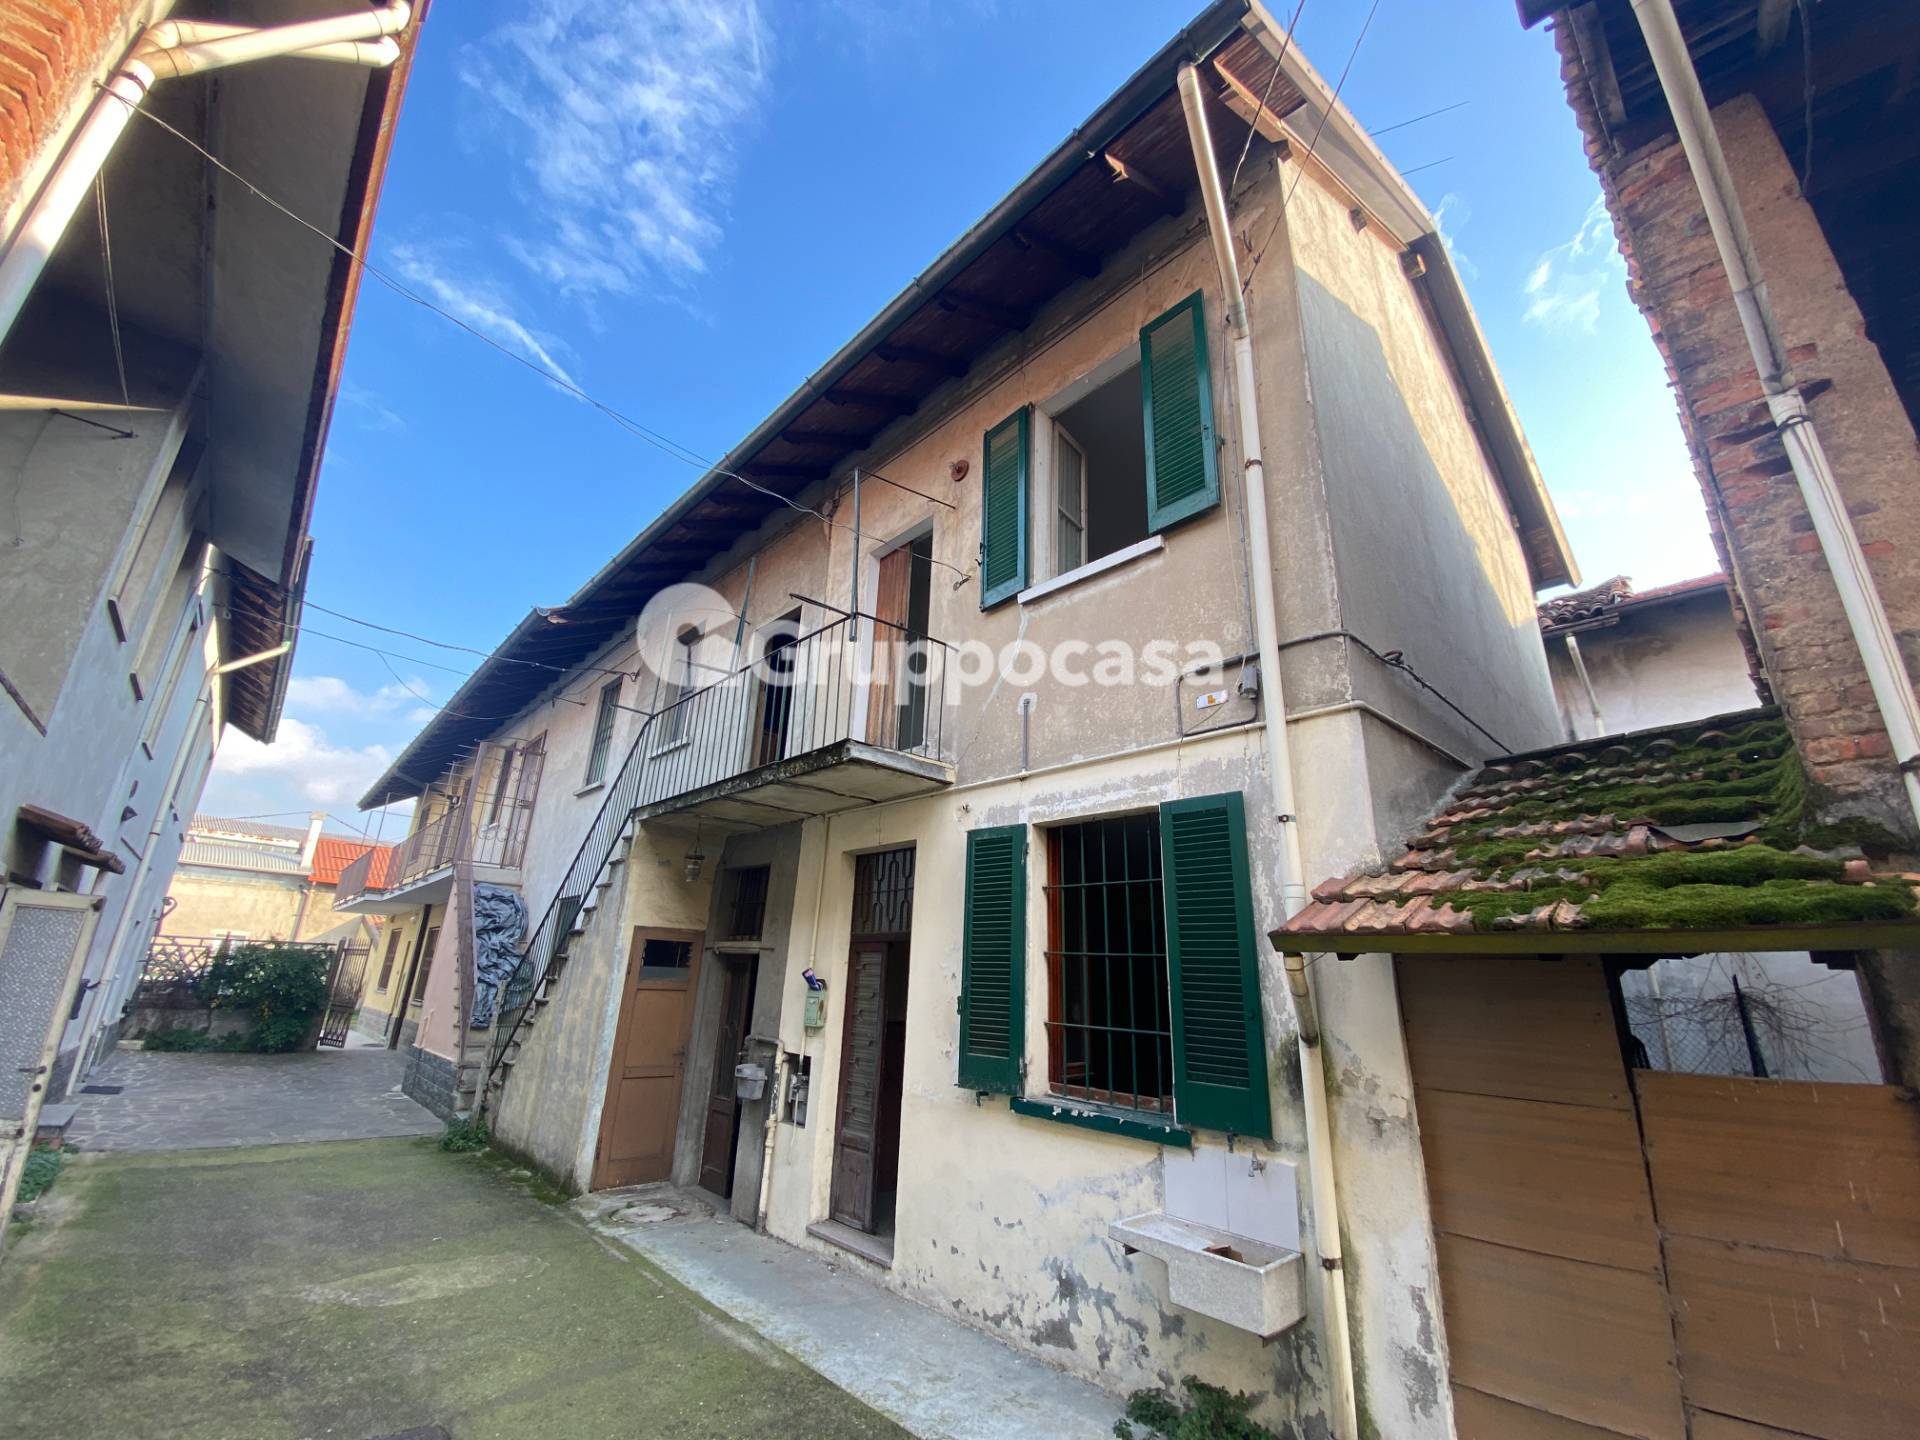 Appartamento in vendita a Boffalora Sopra Ticino, 4 locali, prezzo € 80.000 | PortaleAgenzieImmobiliari.it